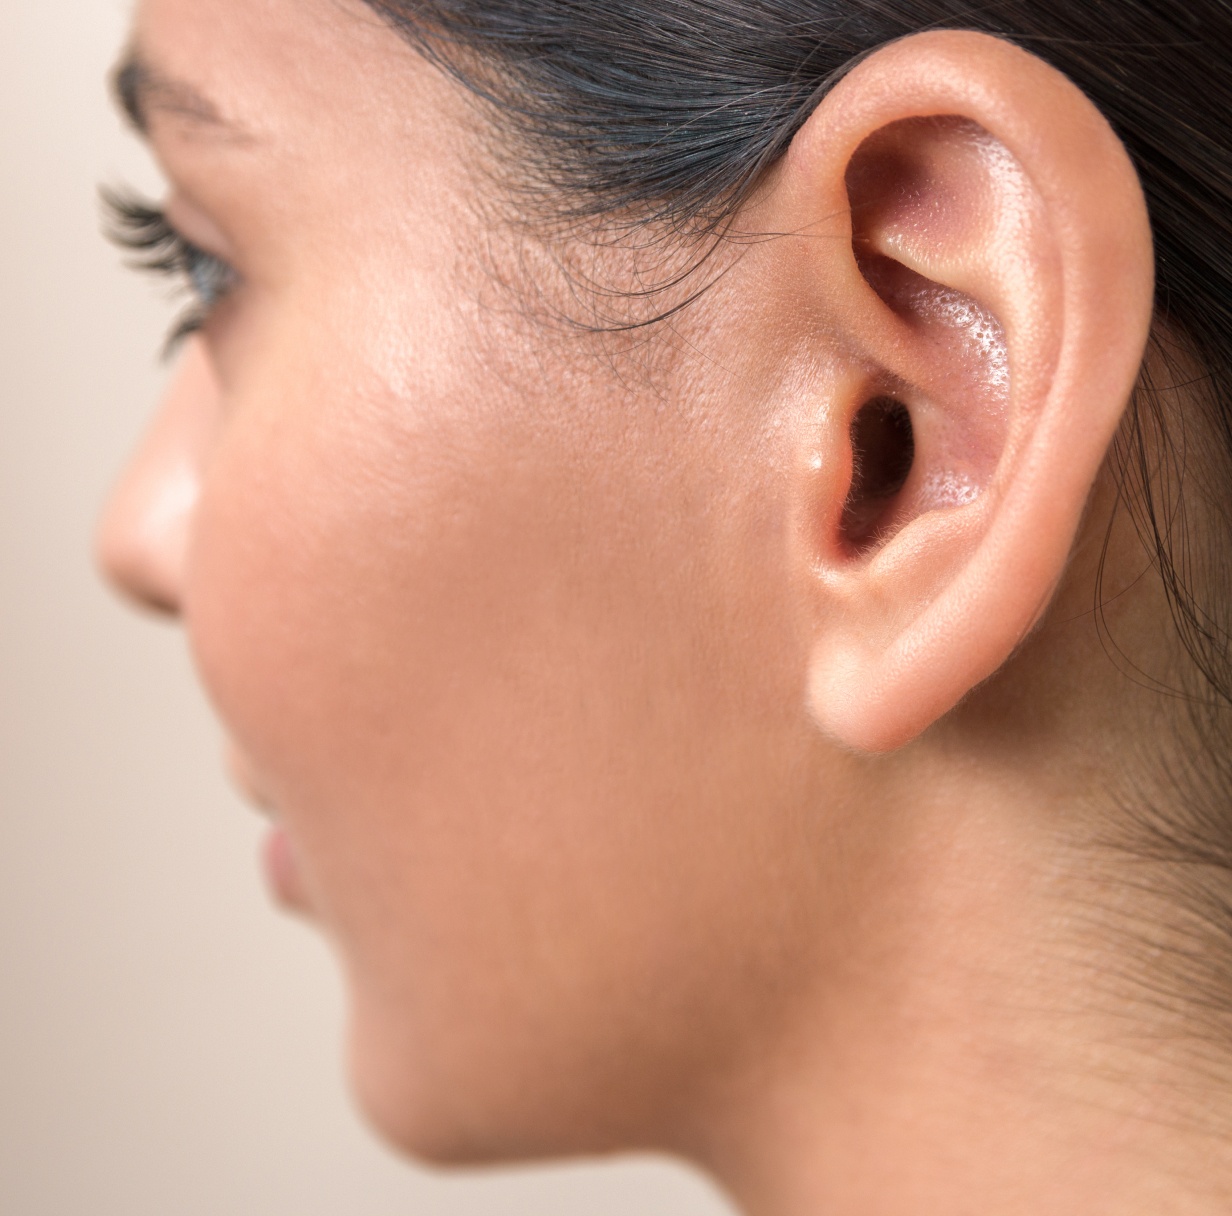 Traiter le lobe d'oreille : acide hyaluronique | Paris 8 | Dr Ben Youssef